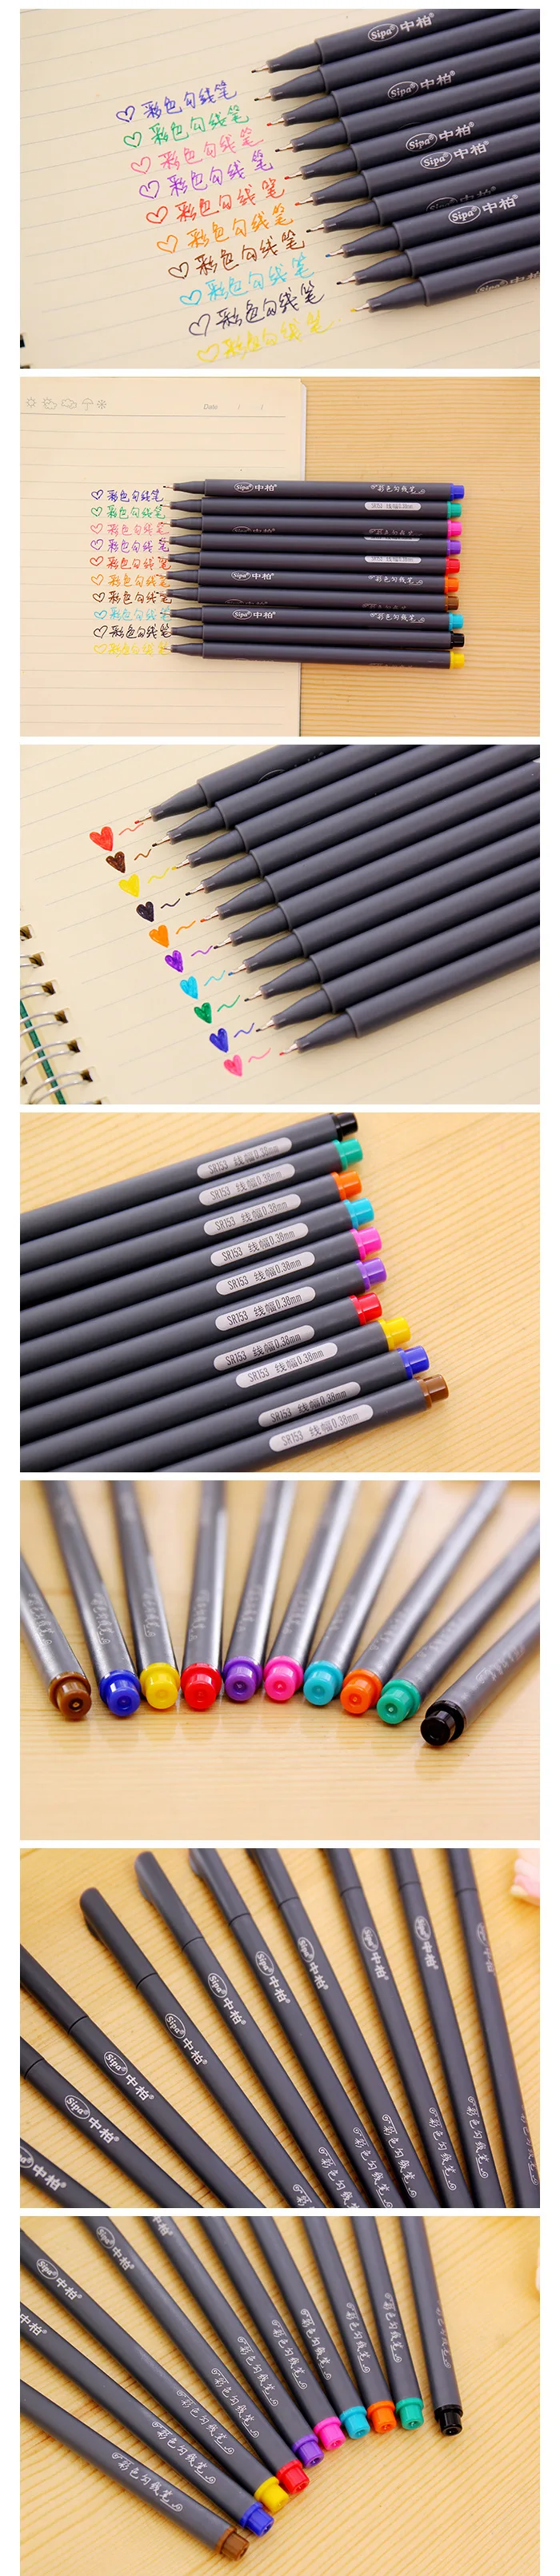 10 цветов 0,38 мм Экстра тонкий цветной гель ручки для школы Микрон ручка канцелярские принадлежности Искусство и ремесла